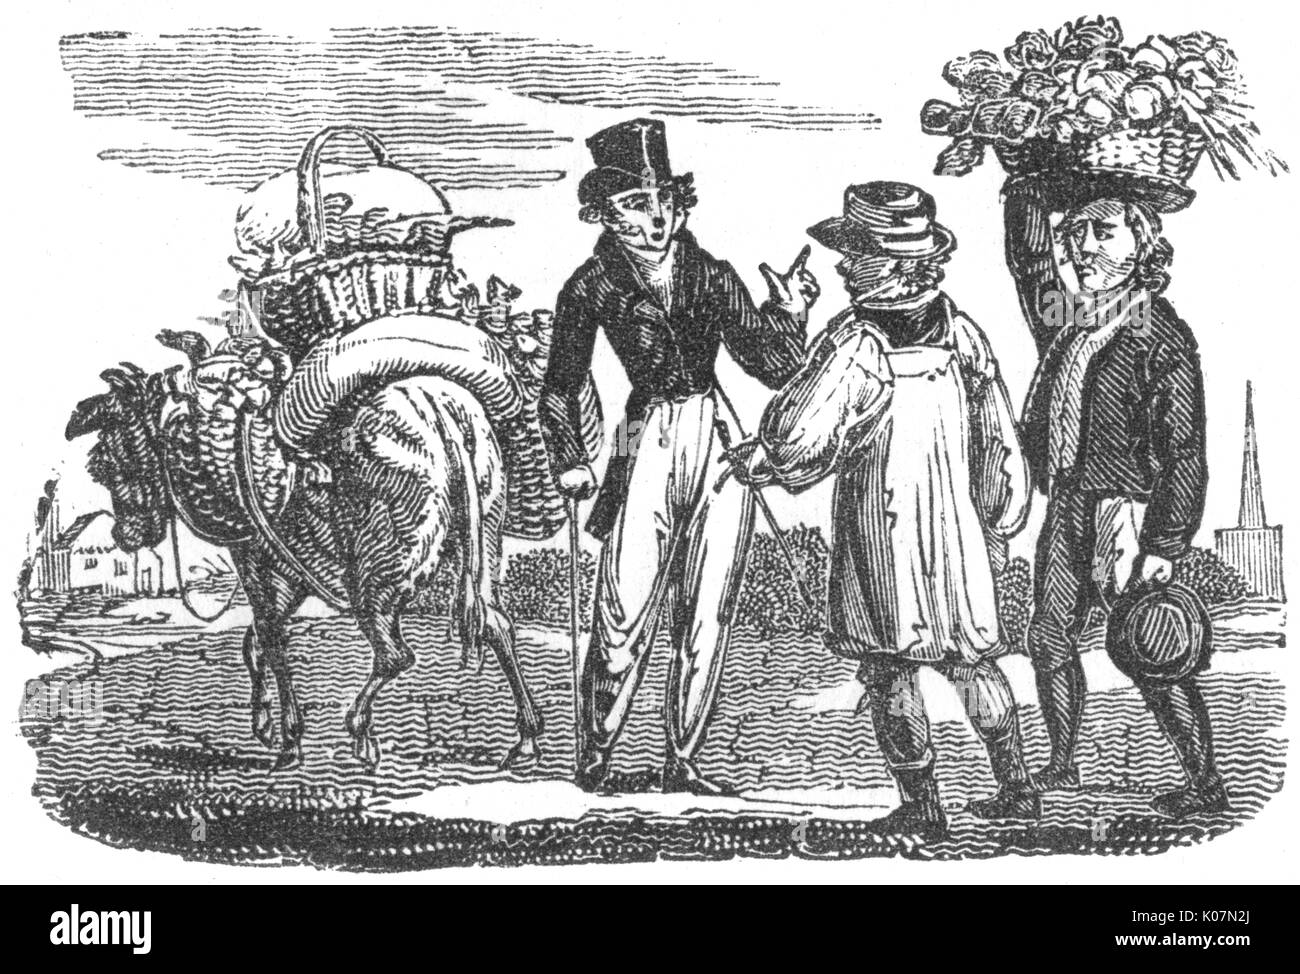 Ein Gentleman hält zwei Bauern mit Körben von Produkten auf einen Esel, vermutlich auf dem Weg zum Markt, C. 1800 Datum: C 1800 Stockfoto